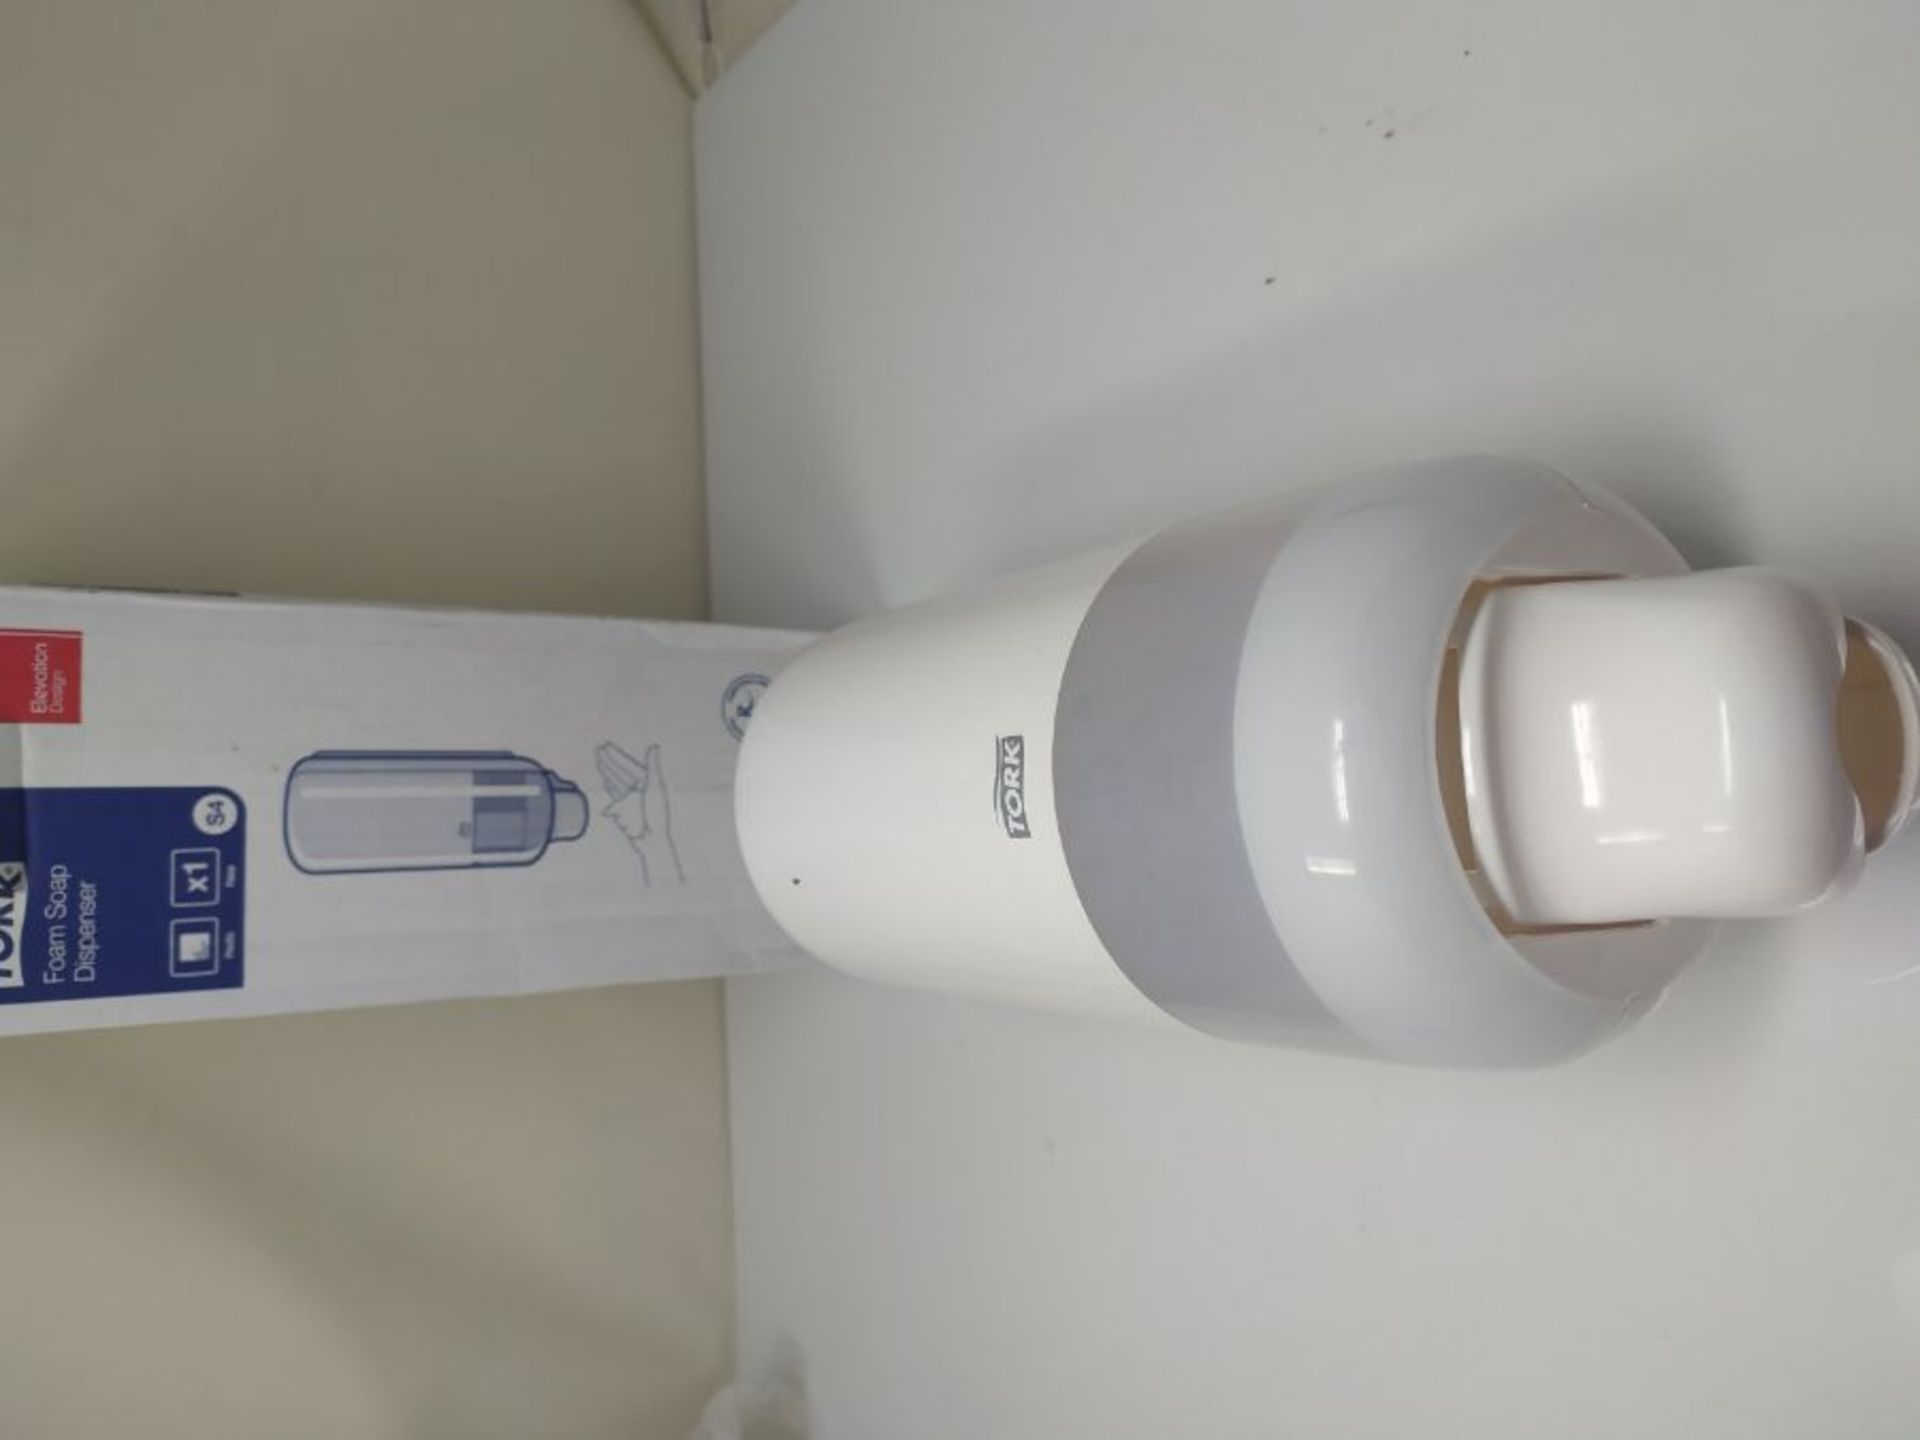 Tork Foam Soap Dispenser for Foam Soap and Foam Hand Sanitiser, Elevation - 561500 - E - Image 2 of 2